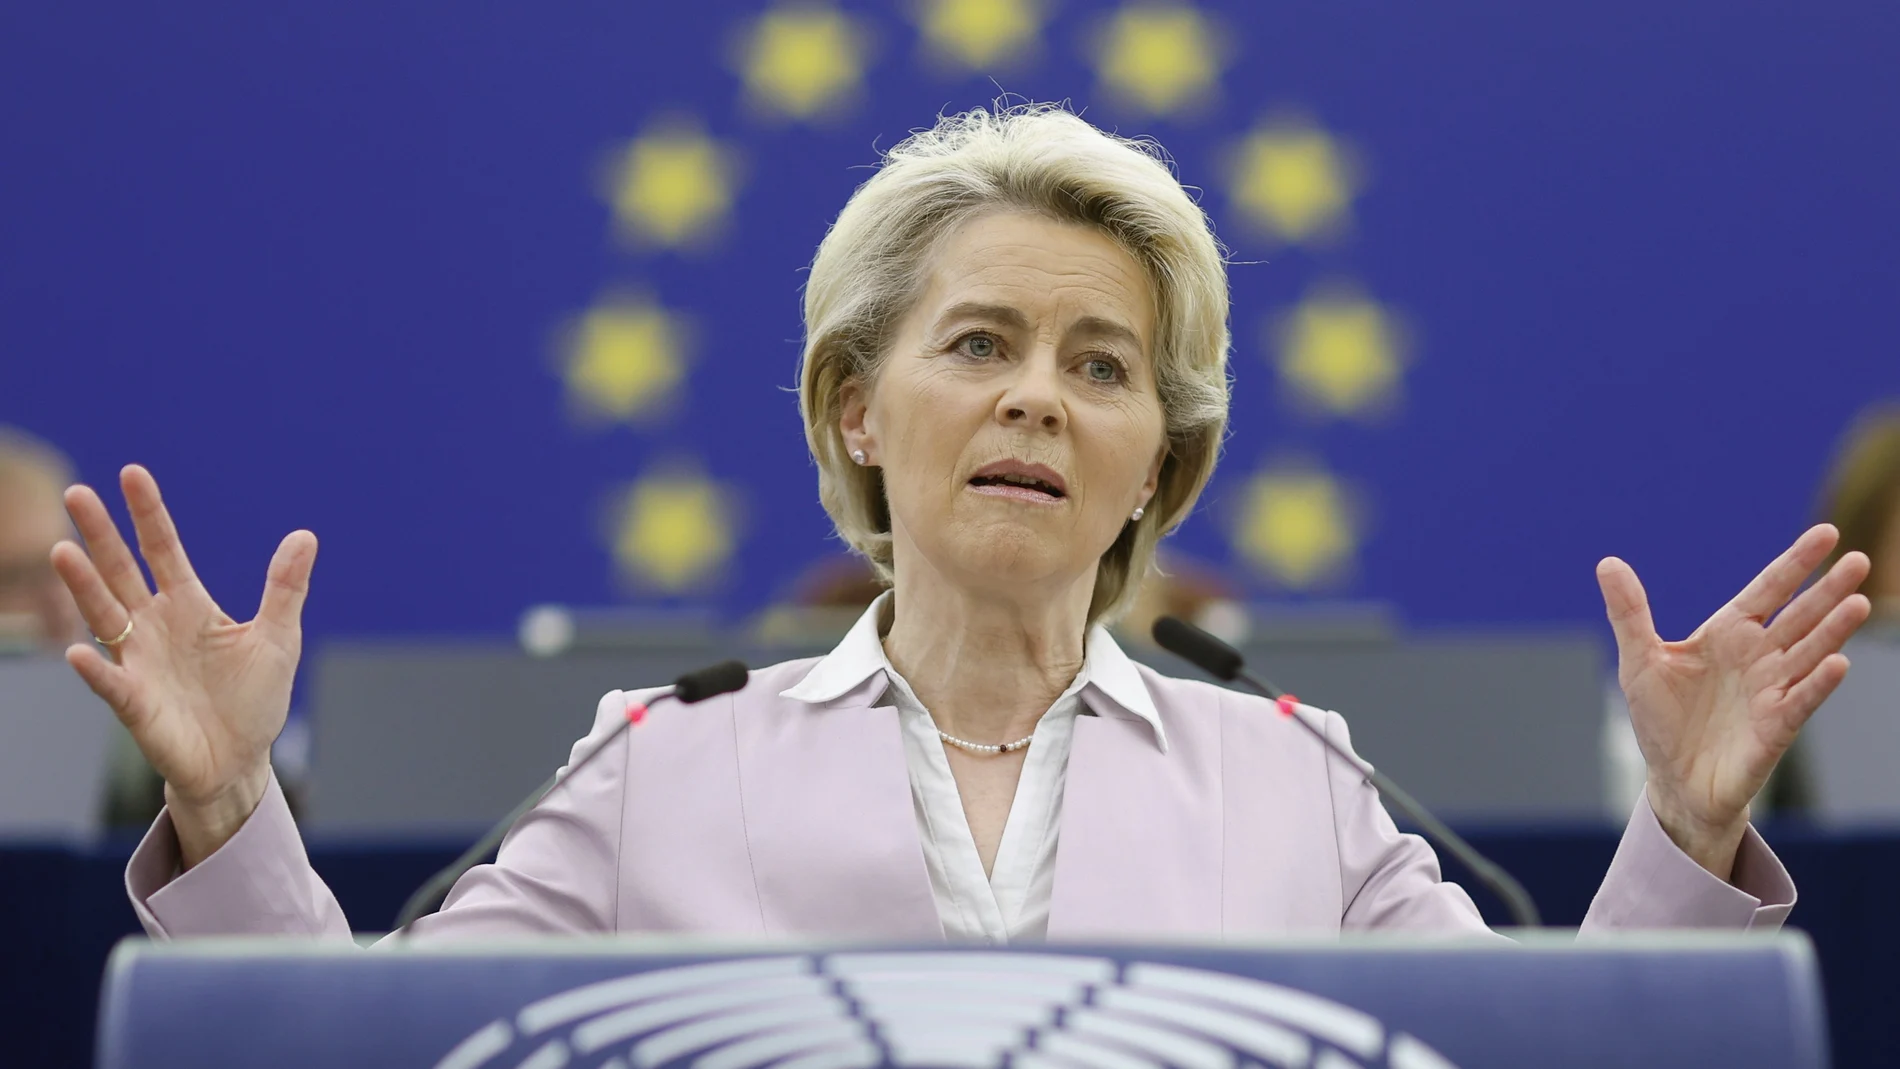 La presidenta de la Comisión Europea, Ursula von der Leyen, durante un discurso en el Parlamento Europeo en Estrasburgo